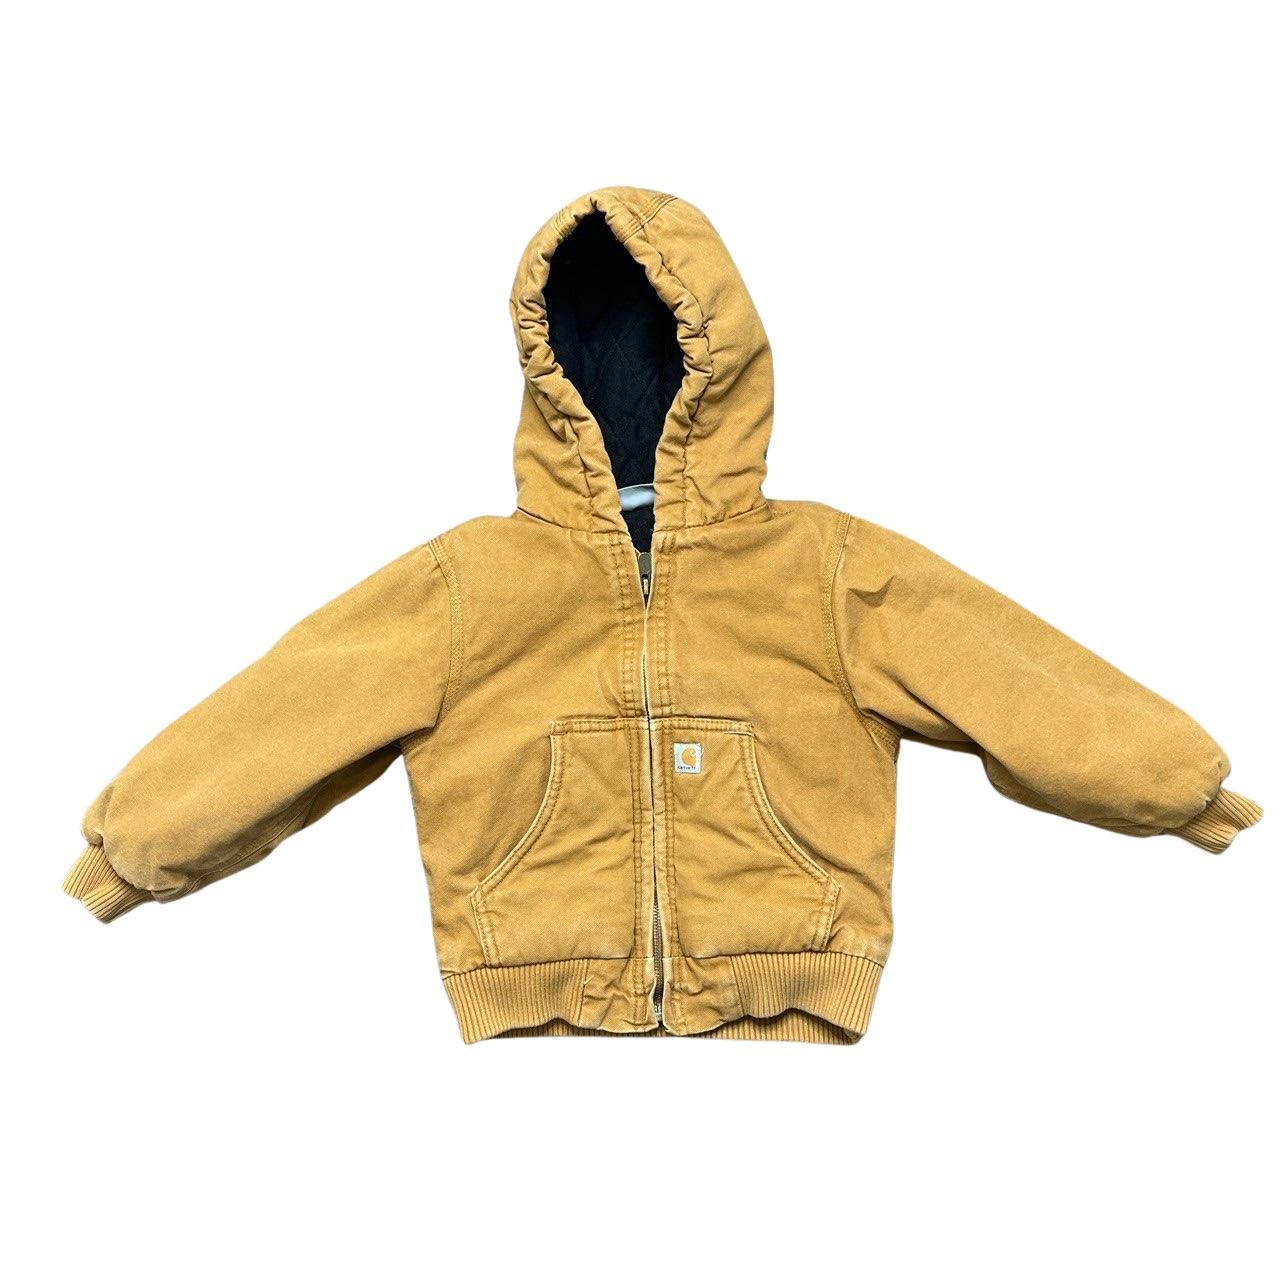 Kids baby carhartt jacket Size 4T - Depop